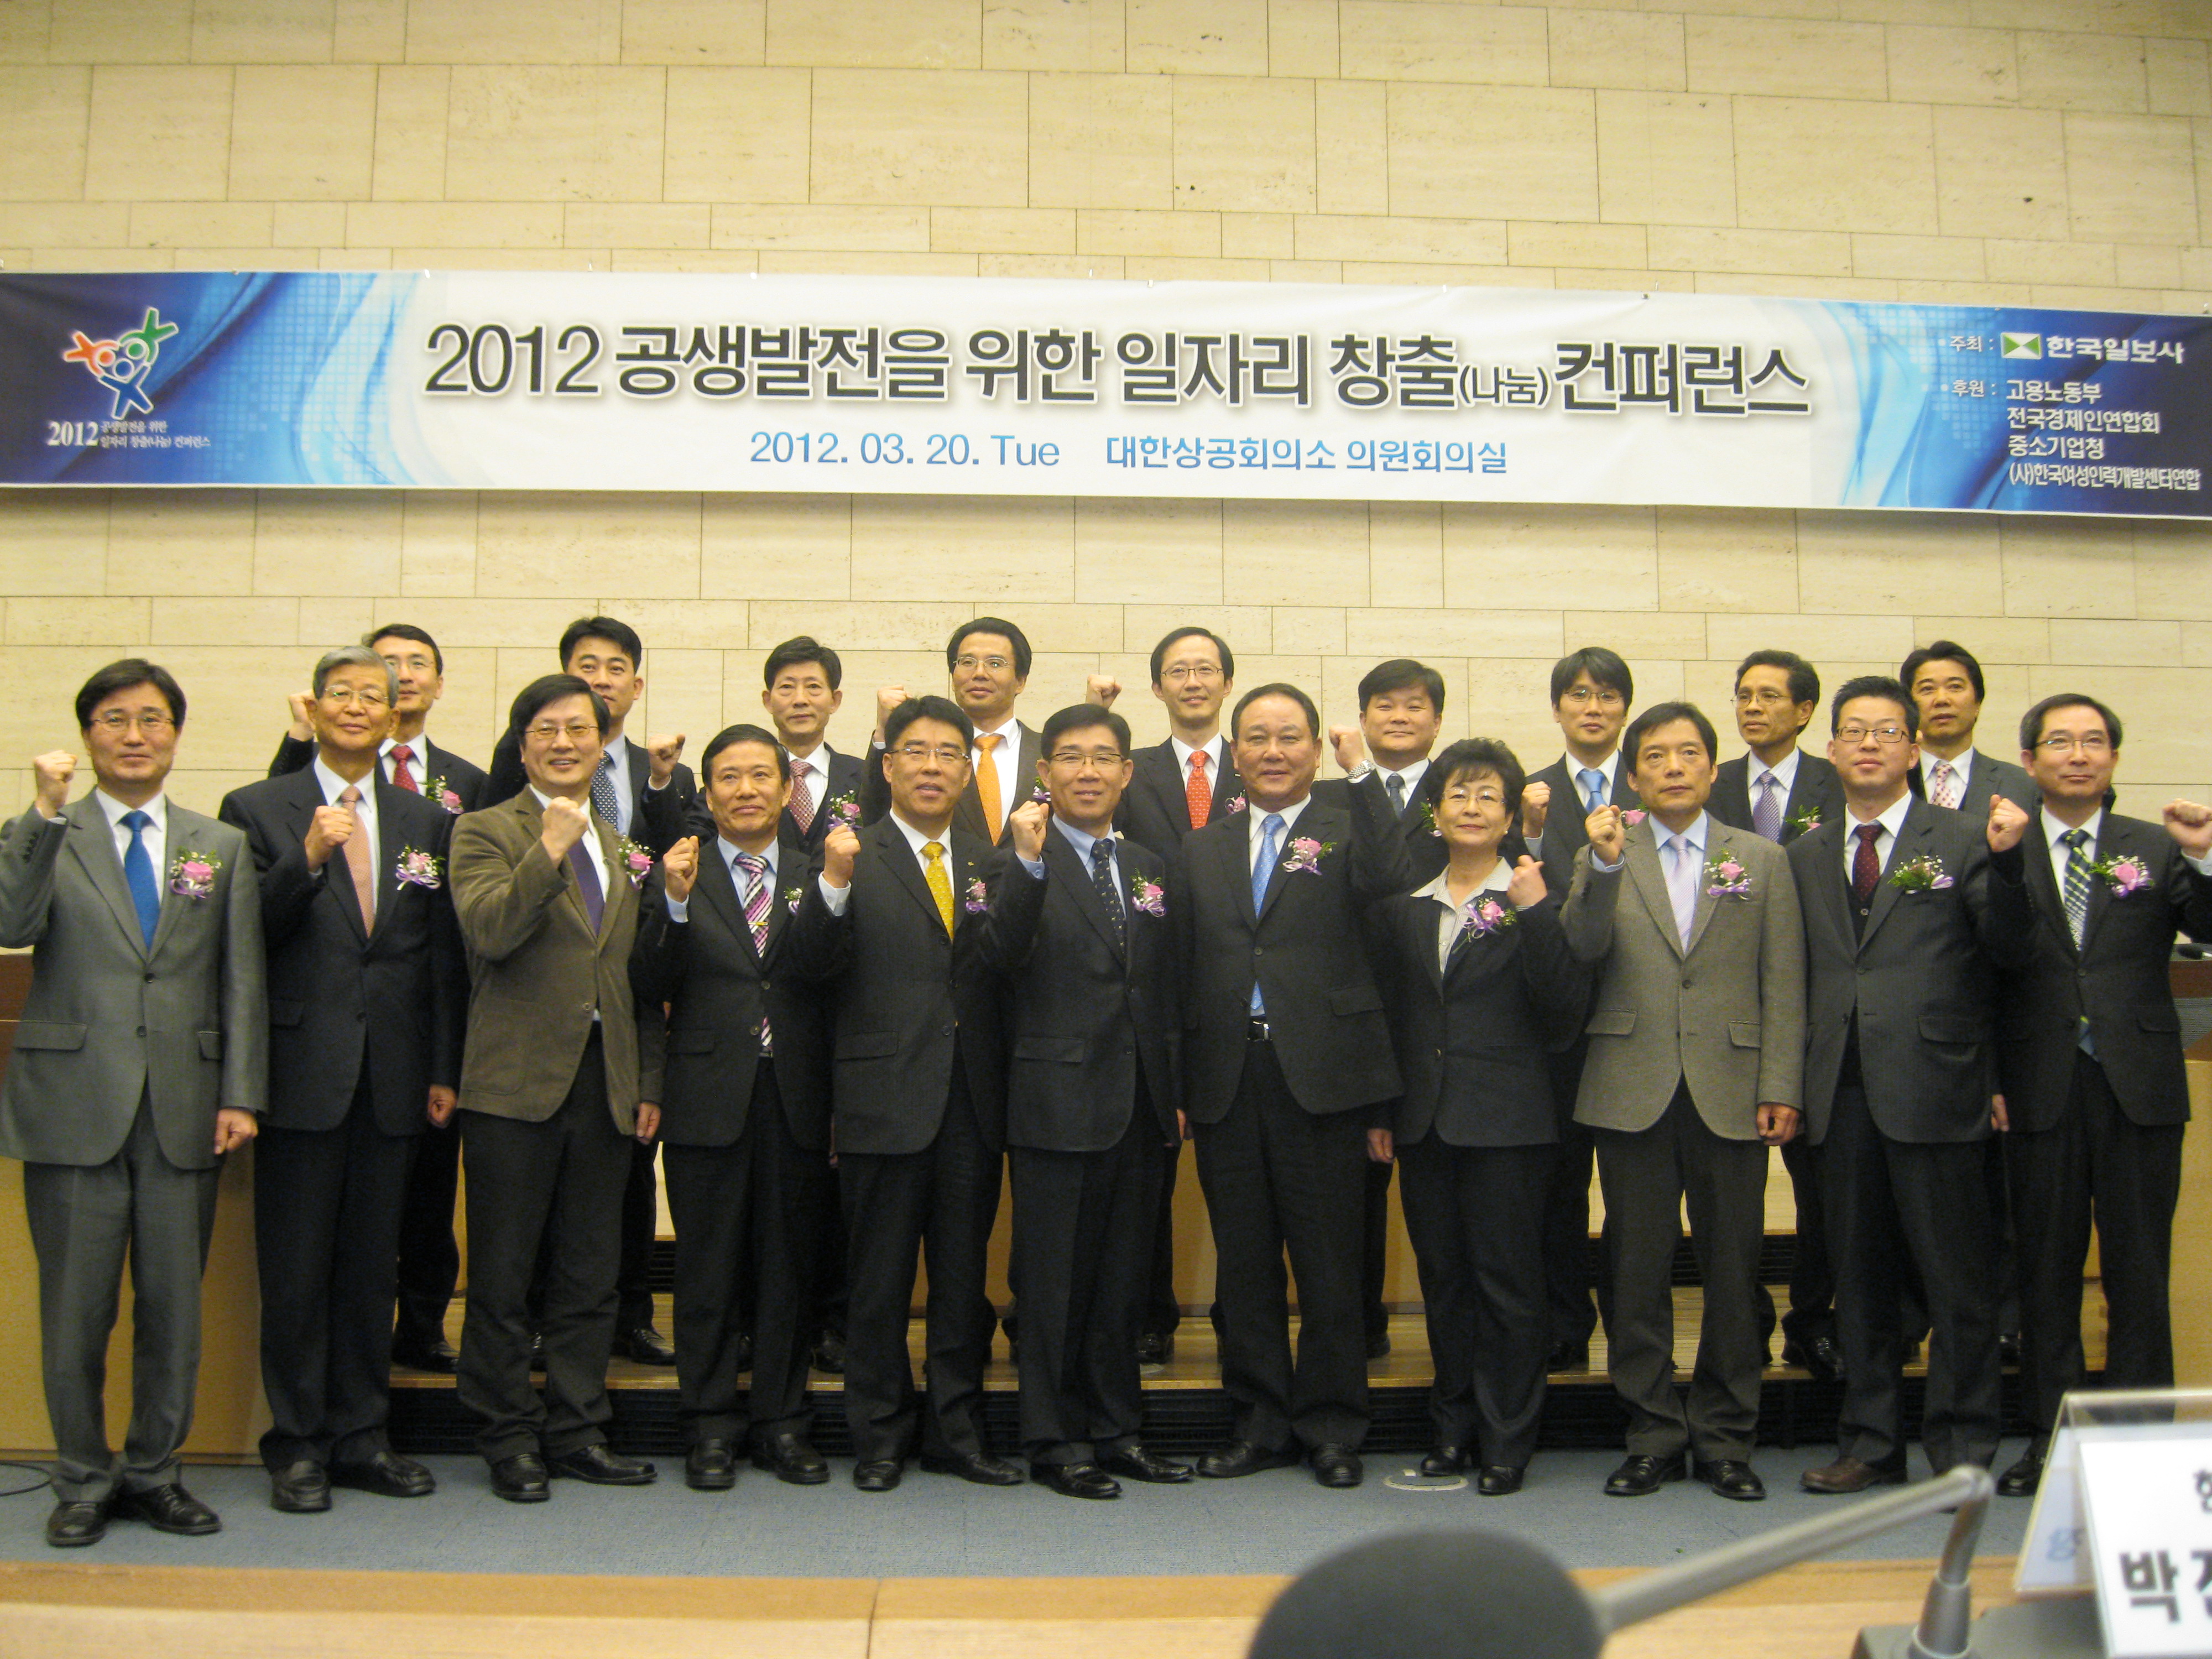 2012 공생발전을 위한 일자리 창출(나눔)컨퍼런스